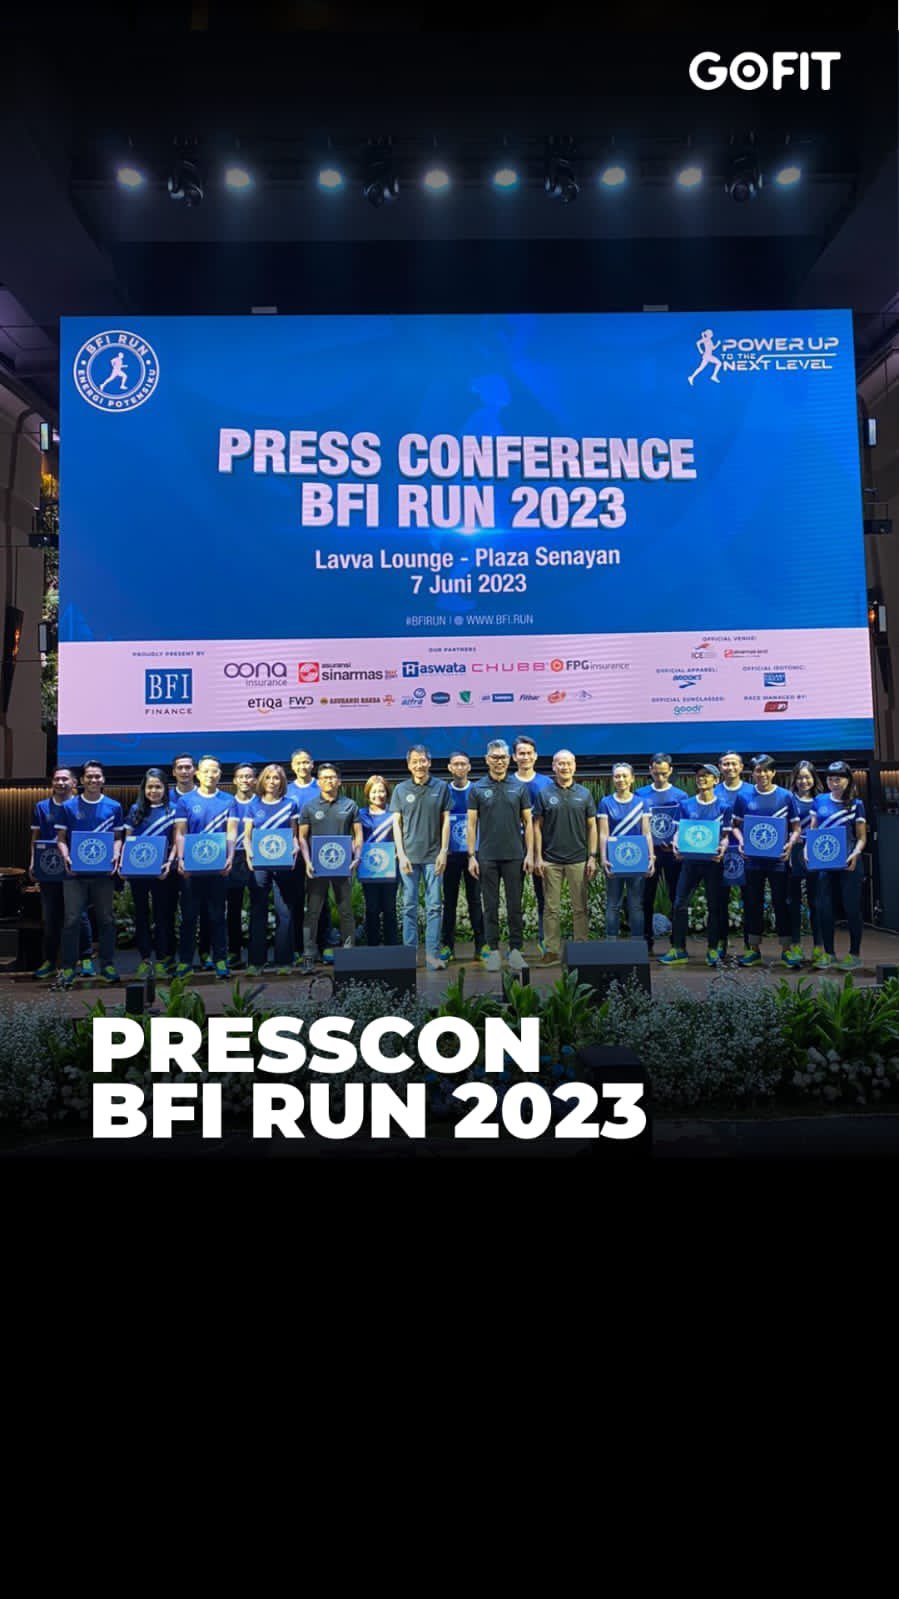 PT BFI Finance Indonesia Tbk (BFI Finance) kembali mengajak para pecinta olahraga lari merasakan sensasi dan kemerlahan BFI RUN 2023 yang digelar pada 25 Juni mendatang di Indonesia Convention Exhibition (ICE) BSD City, Kabupaten Tangerang, Banten, Hadir dengan tema Power Up to the Next Level, BFI RUN 2023 lebih istimewa dari tahun sebelumnya. 

BFI RUN 2023 menyajikan satu kategori baru, yakni Marathon Duo (dua pelari, masing-masing 21,1K), total hadiah lebih dari Rp300 juta, dan hadiah istimewa Overseas Marathon Challenge. BFI RUN diadakan sebagal bentuk kepedulian BFI Finance terhadap peningkatan kualitas dan taraf hidup masyarakat dari segi gaya hidup dan kesehatan sehingga masyarakat dapat mewujudkan tujuan finansial dan kesejahteraan yang lebih baik di masa depan.

Sensasi BFI RUN 2023 membawa lari ke level berikutnya! Bersiaplah merasakan kemeriahan dengan kategori baru dan total hadiah lebih dari Rp300 juta, termasuk Overseas Marathon Challenge. Jangan lewatkan momen bersejarah ini pada 25 Juni di ICE BSD City. Siapkah kamu untuk Power Up to the Next Level?🏃🏻💪🏻🤩